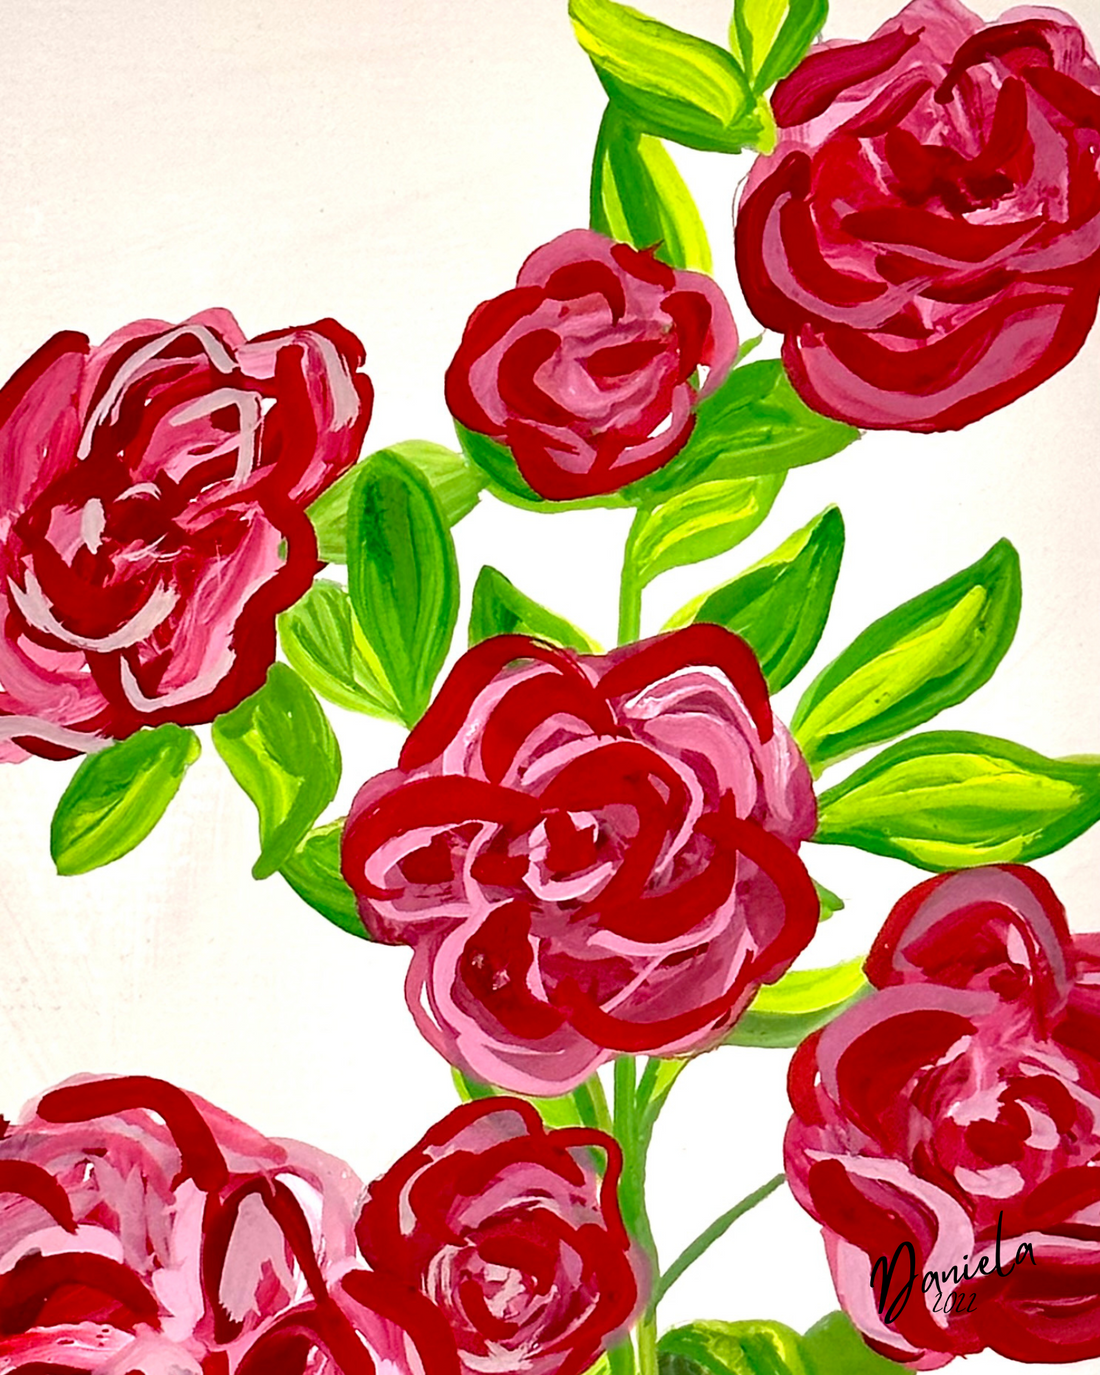 Camellia Flowers original